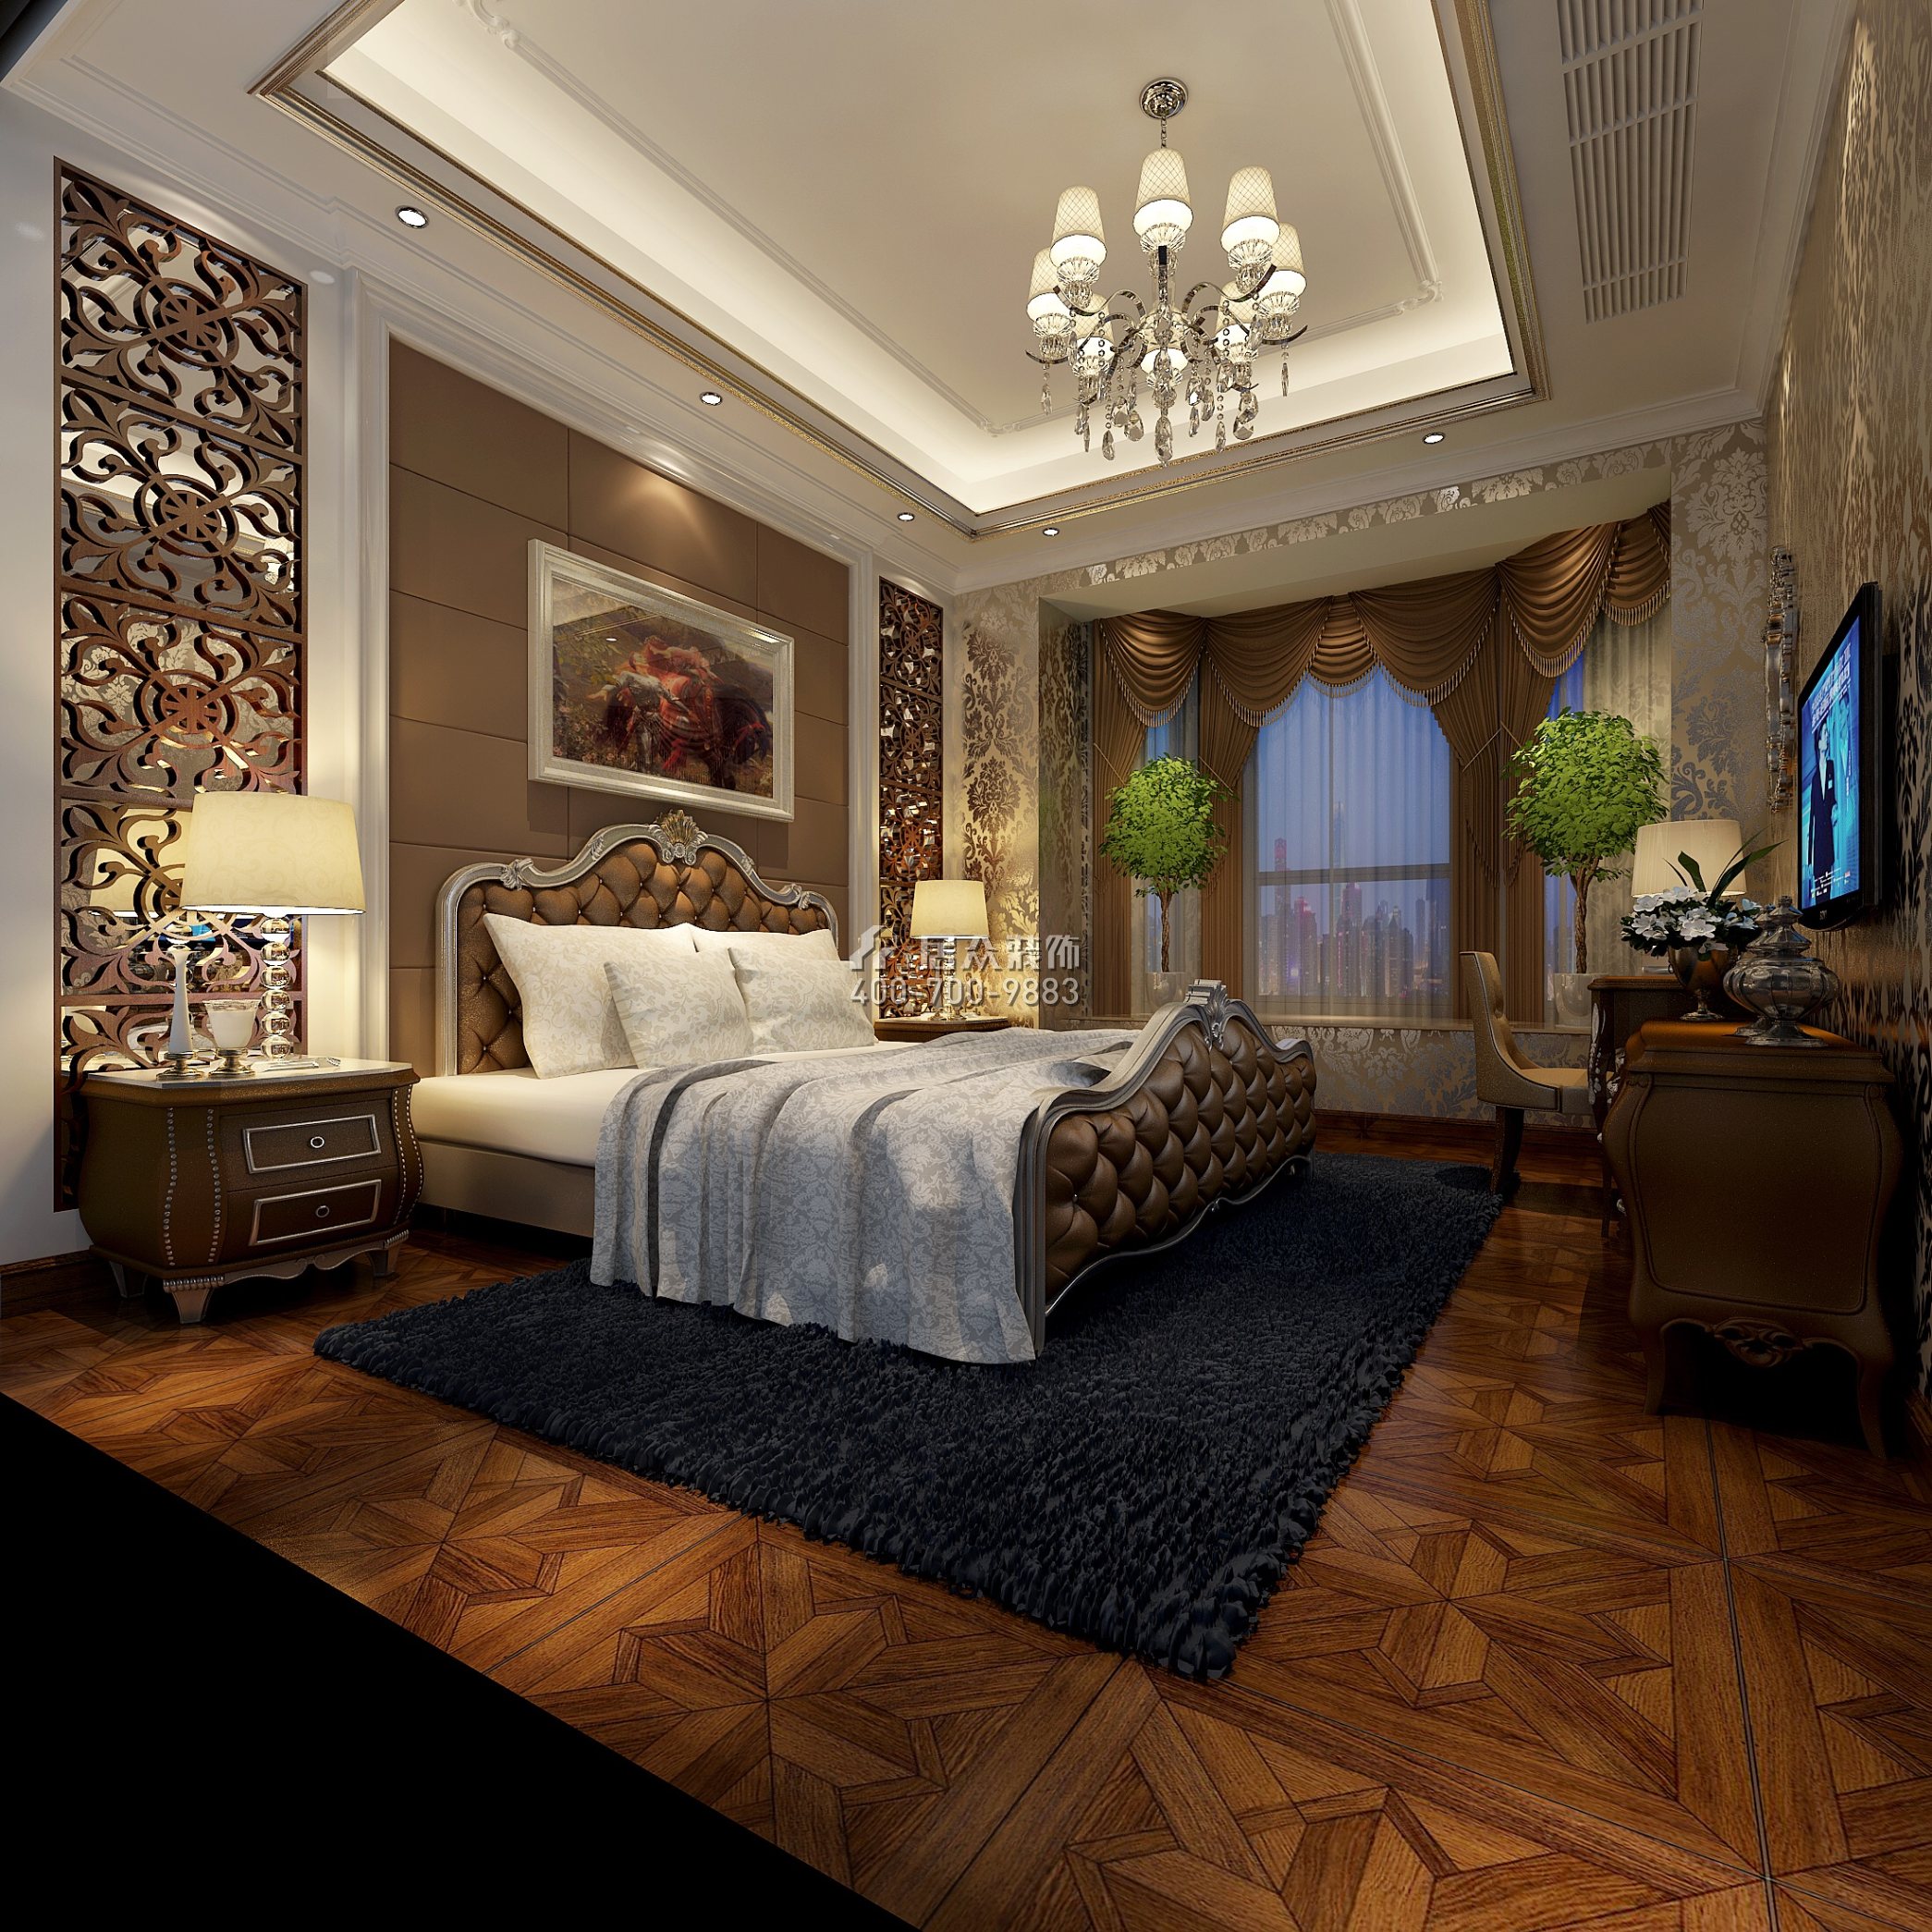 元邦山清水秀268平方米欧式风格别墅户型卧室装修效果图